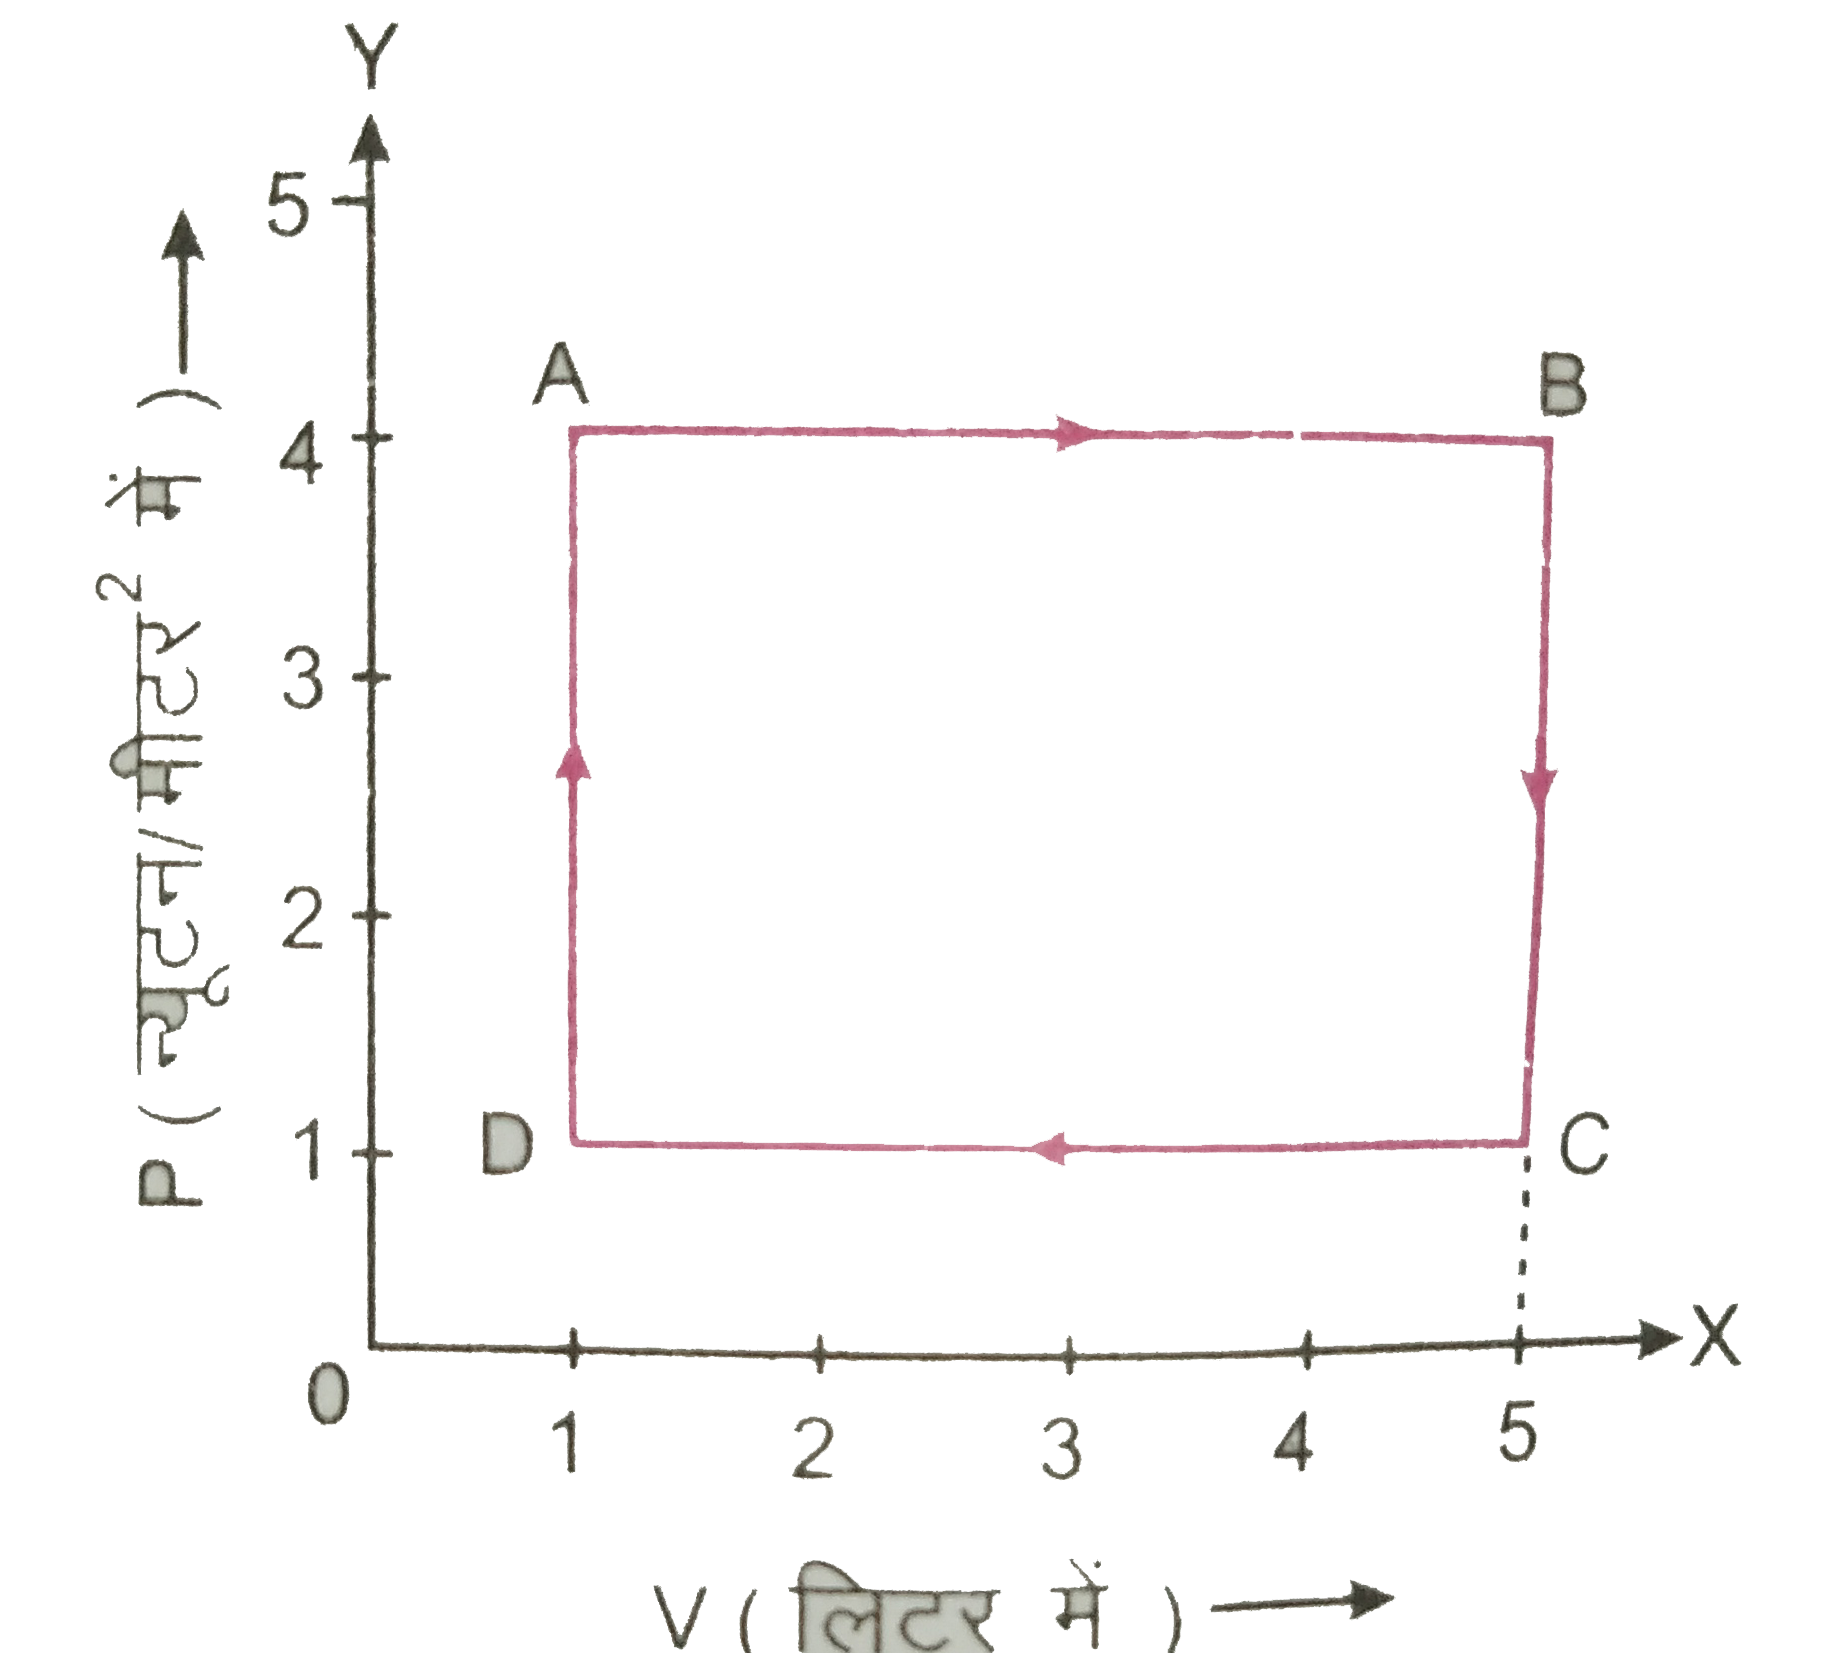 चित्र  में किसी गैस की अवस्था परिवर्तन के लिए P-V आरेख प्रदर्शित है। गणना कीजिए। B से C तक अवस्था परिवर्तन में किया गया कार्य |